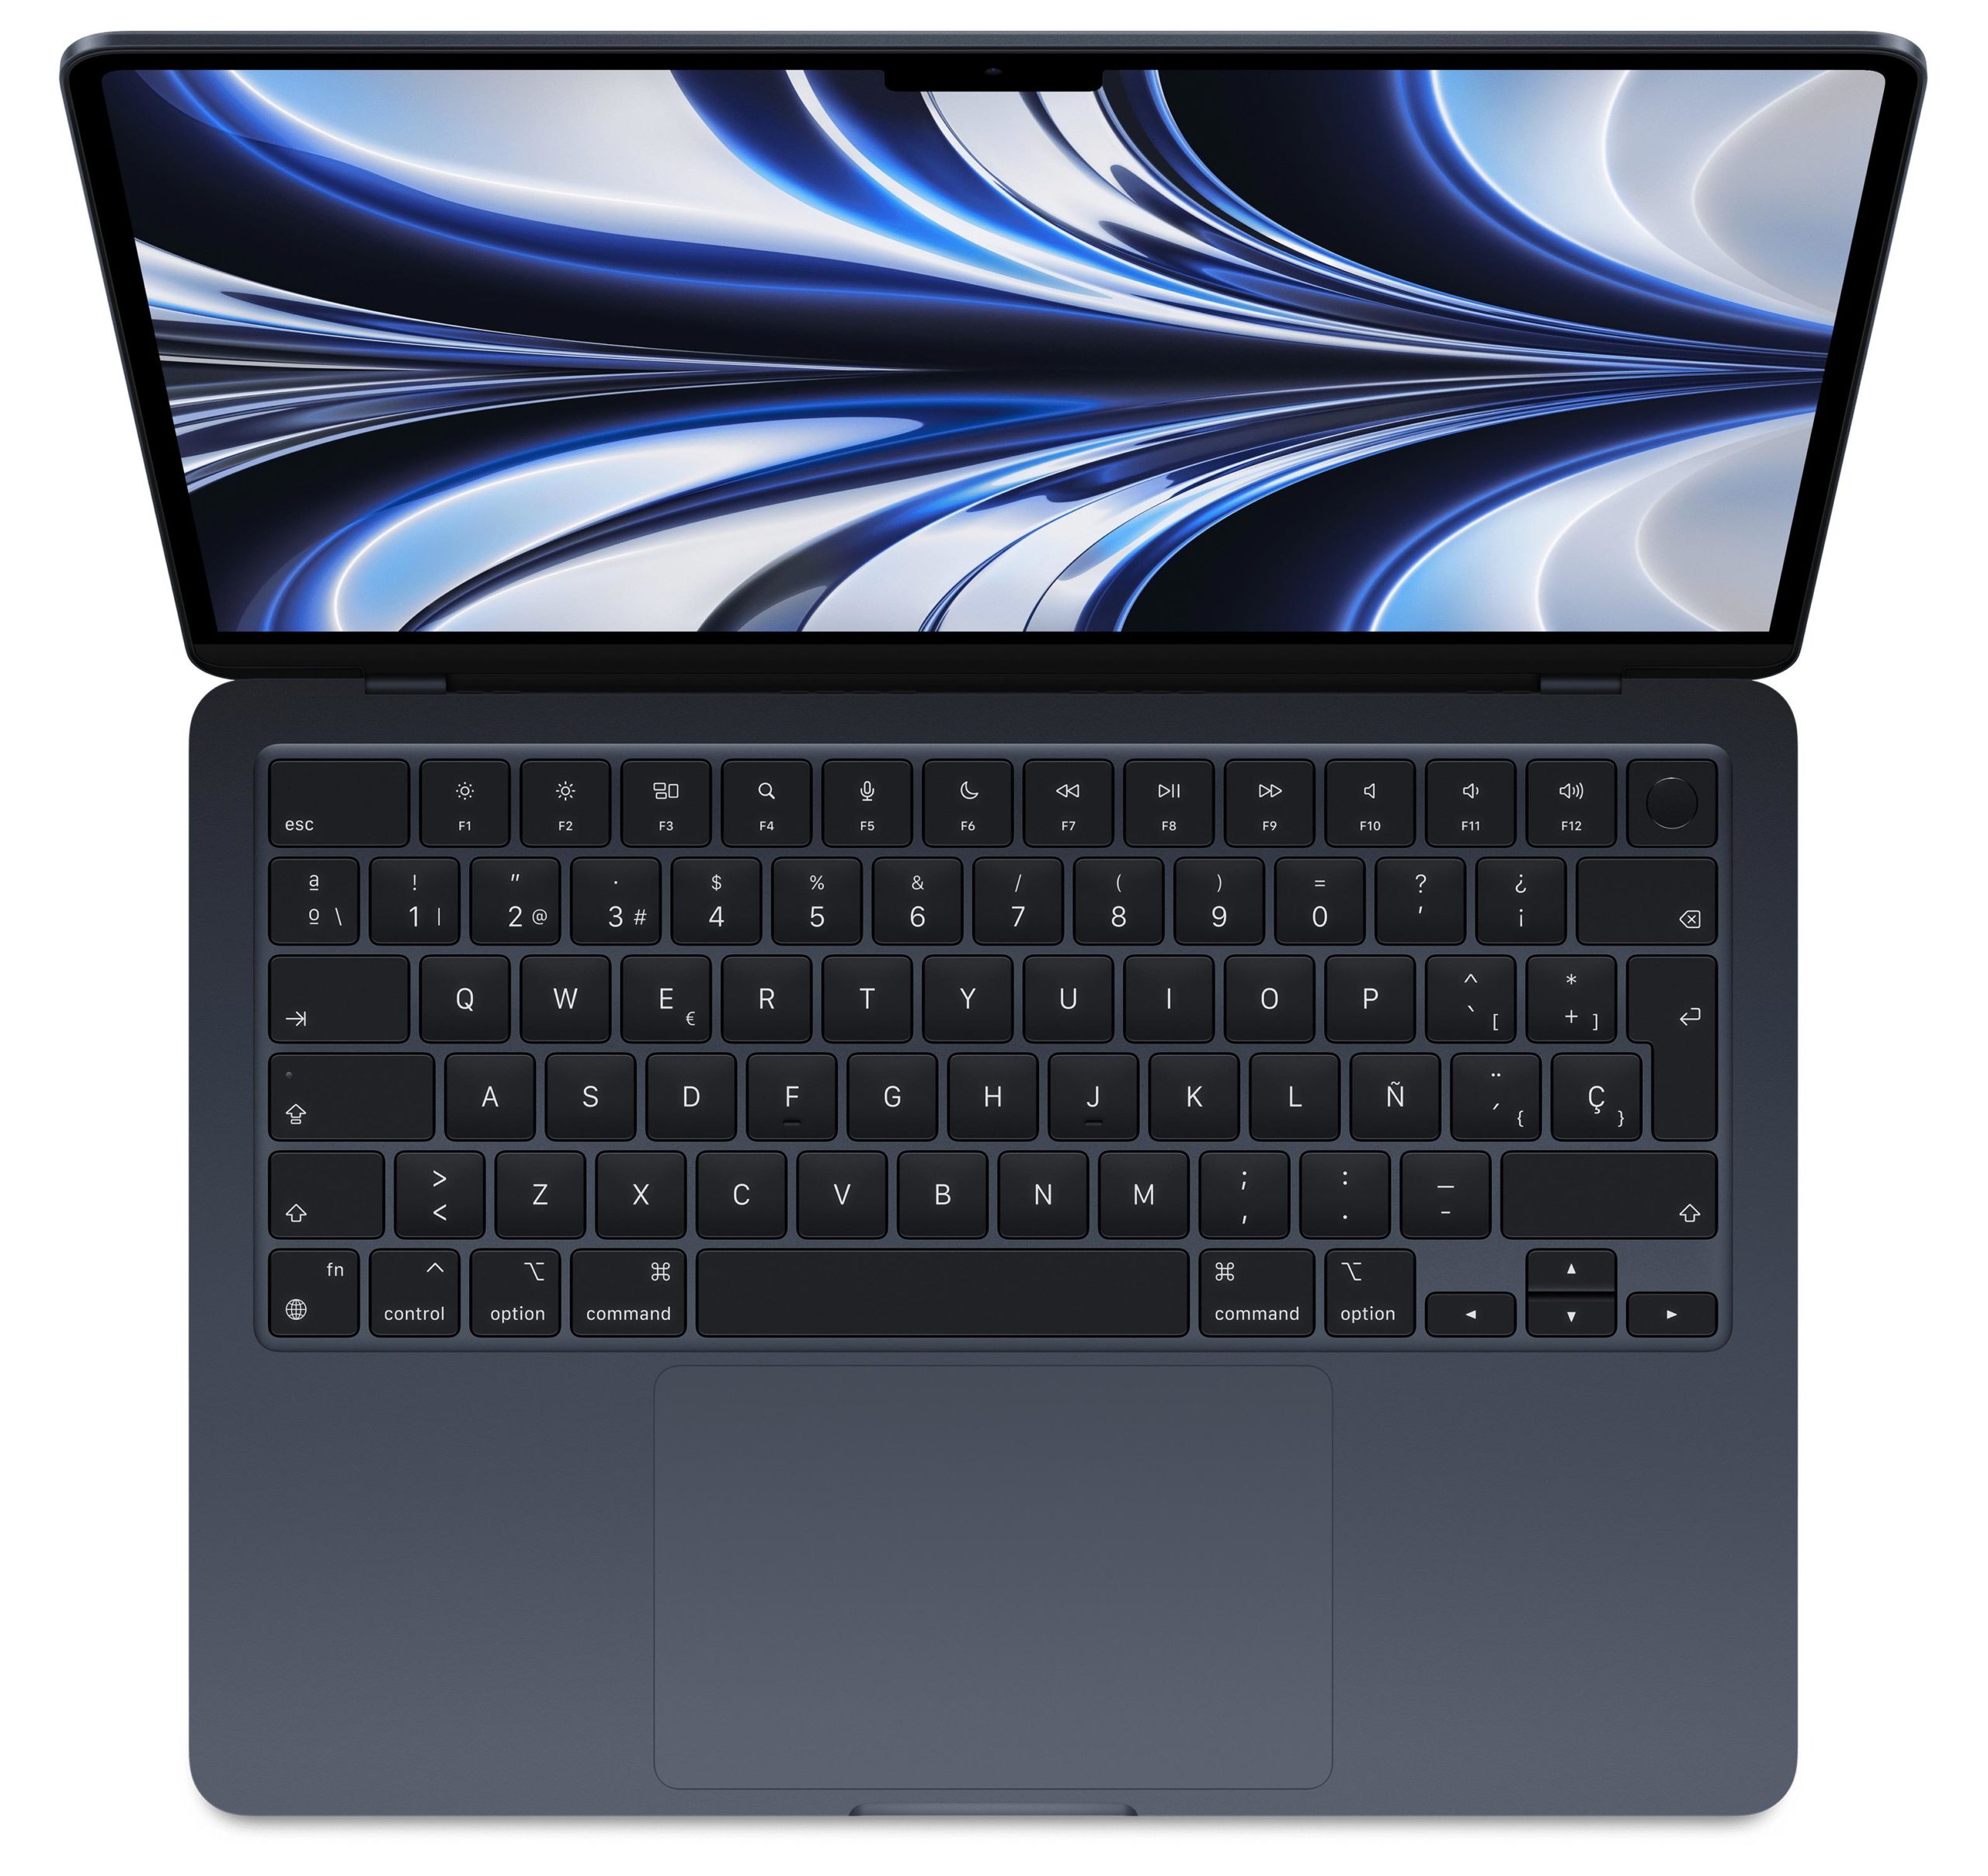 MacBook Air M2 gana 0,6 pulgadas, el puerto MagSafe 3, y una sensible rebaja de 100€ frente a MacBook Pro M2 -a costa de perder dos núcleos GPU